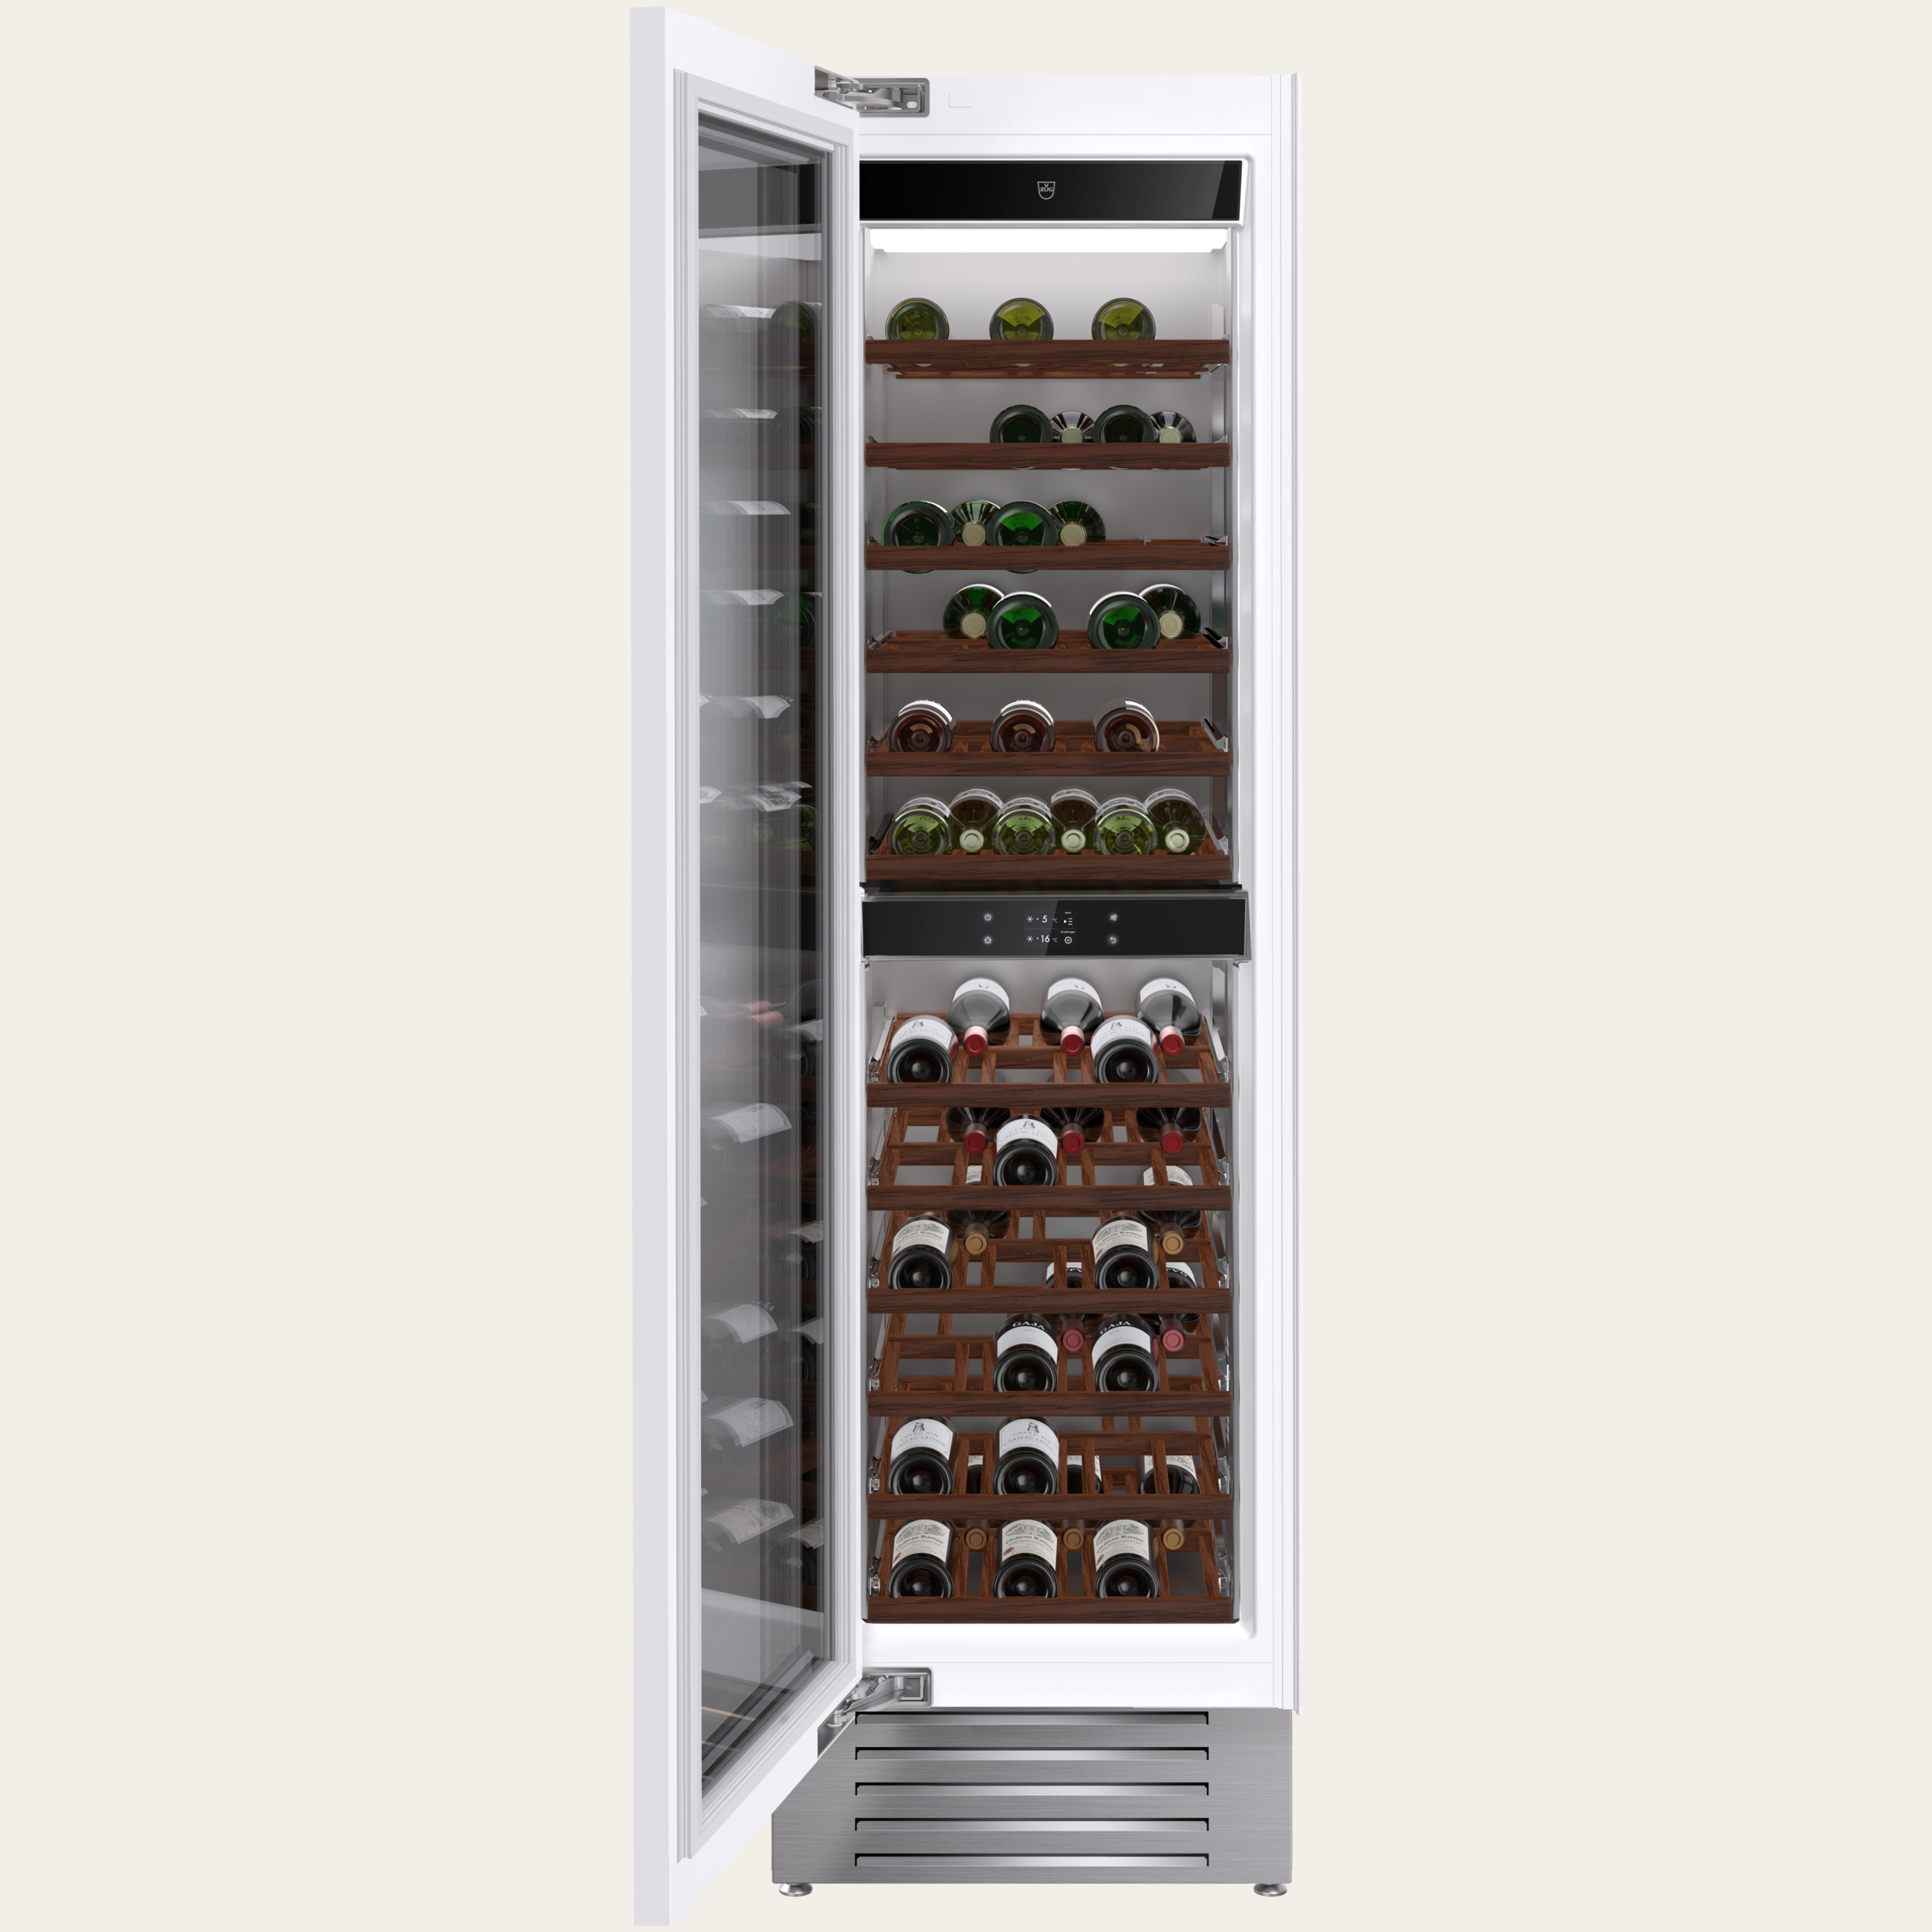 V-ZUG Refrigerator/freezer WineCooler V6000 Supreme,Standard width: 60 cm, Standard height: 205 cm, Fully integratable, Door hinge: Left, Energy efficiency rating: G, TouchControl